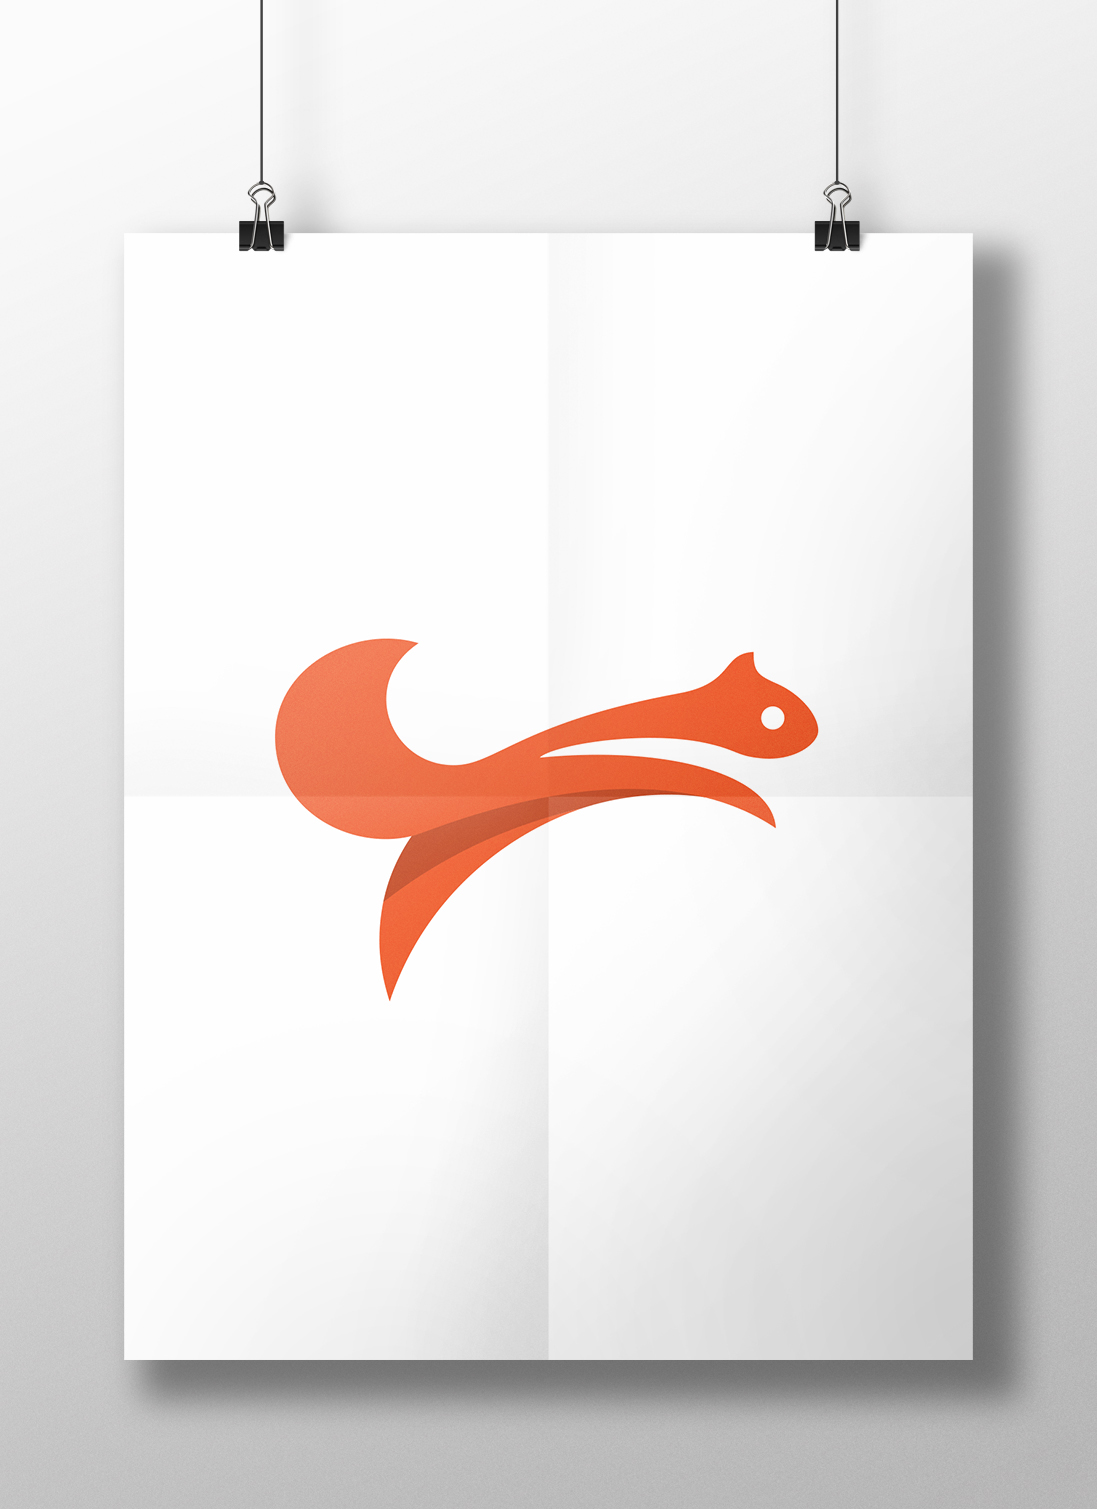 squirrel orange logo jump